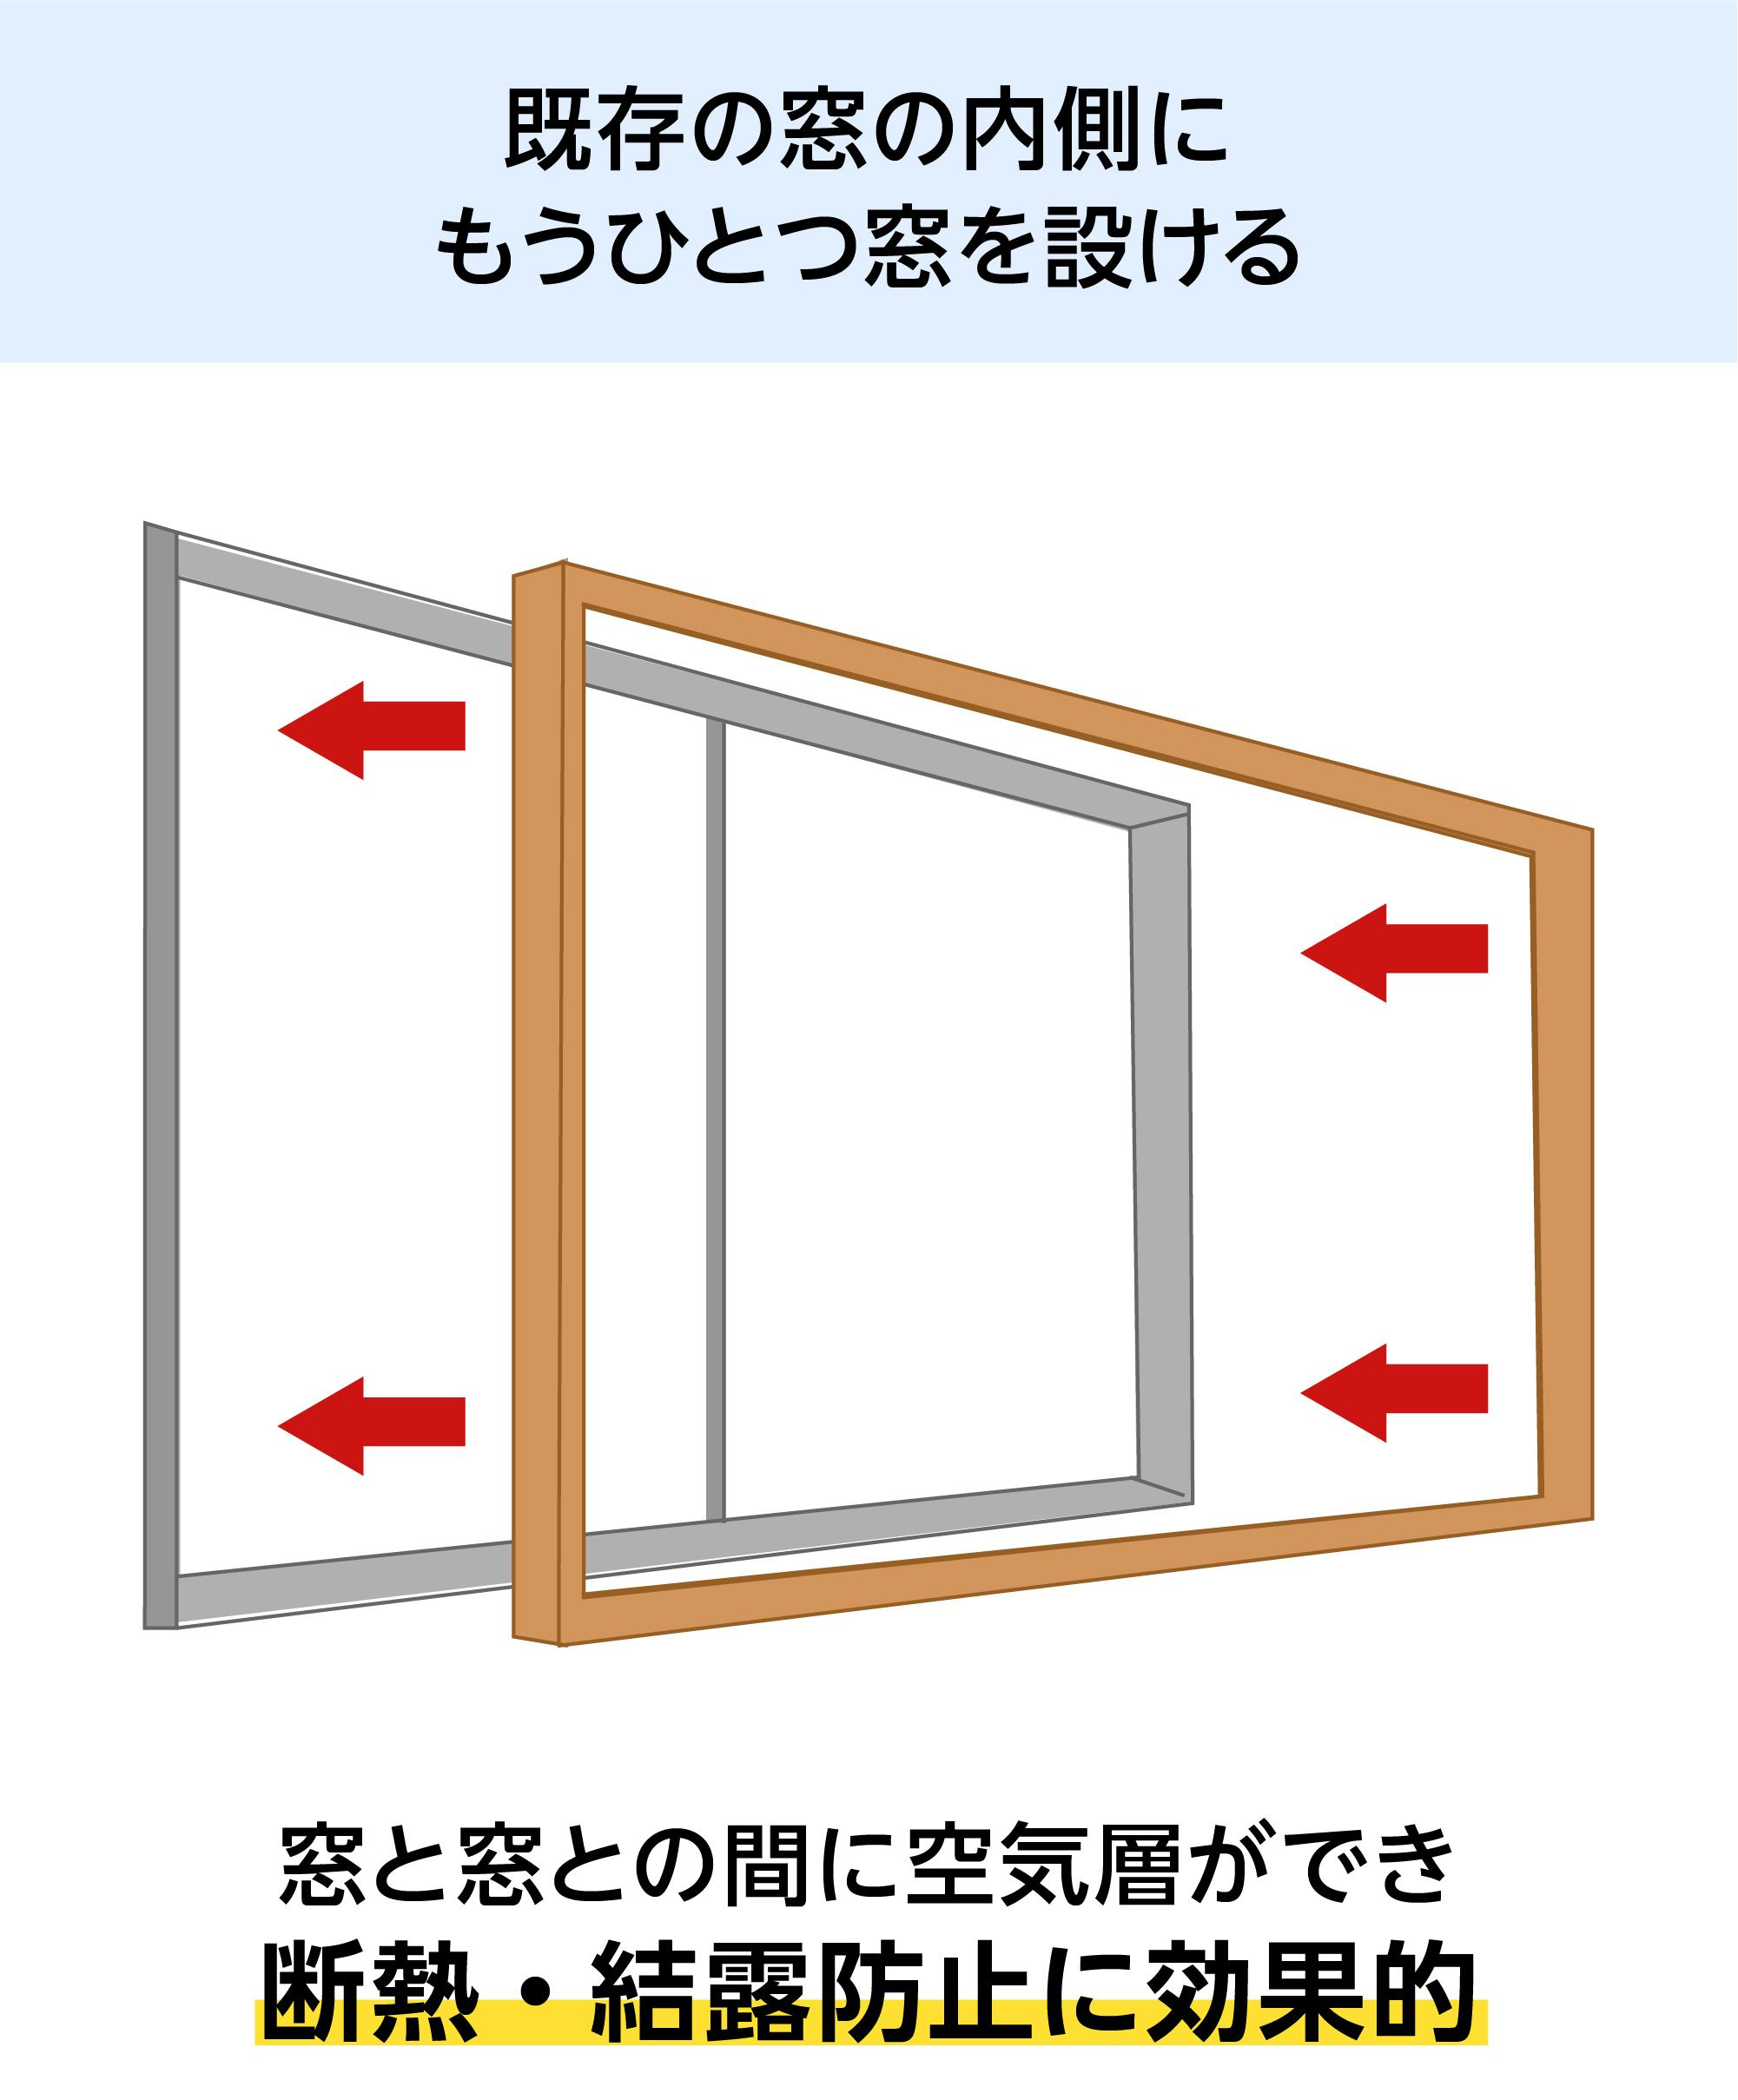 LIXILの内窓「インプラス」引き違い窓 for Renovation (2枚建て) - 既存の窓の内側にもうひとつ窓を設ける